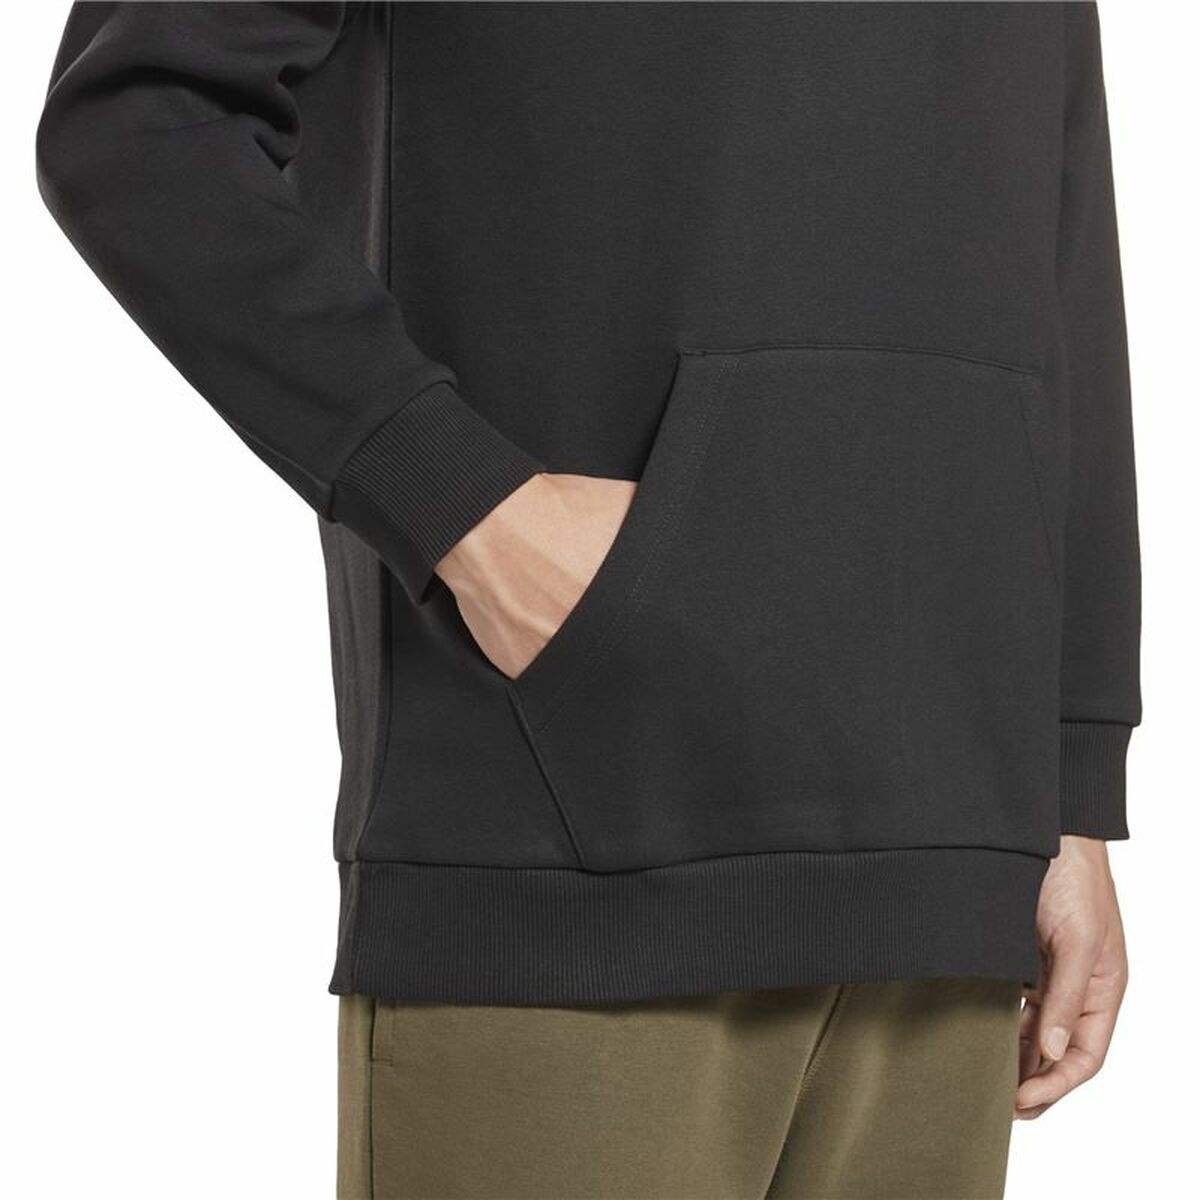 Herren Sweater mit Kapuze Reebok Left Chest Logo Schwarz